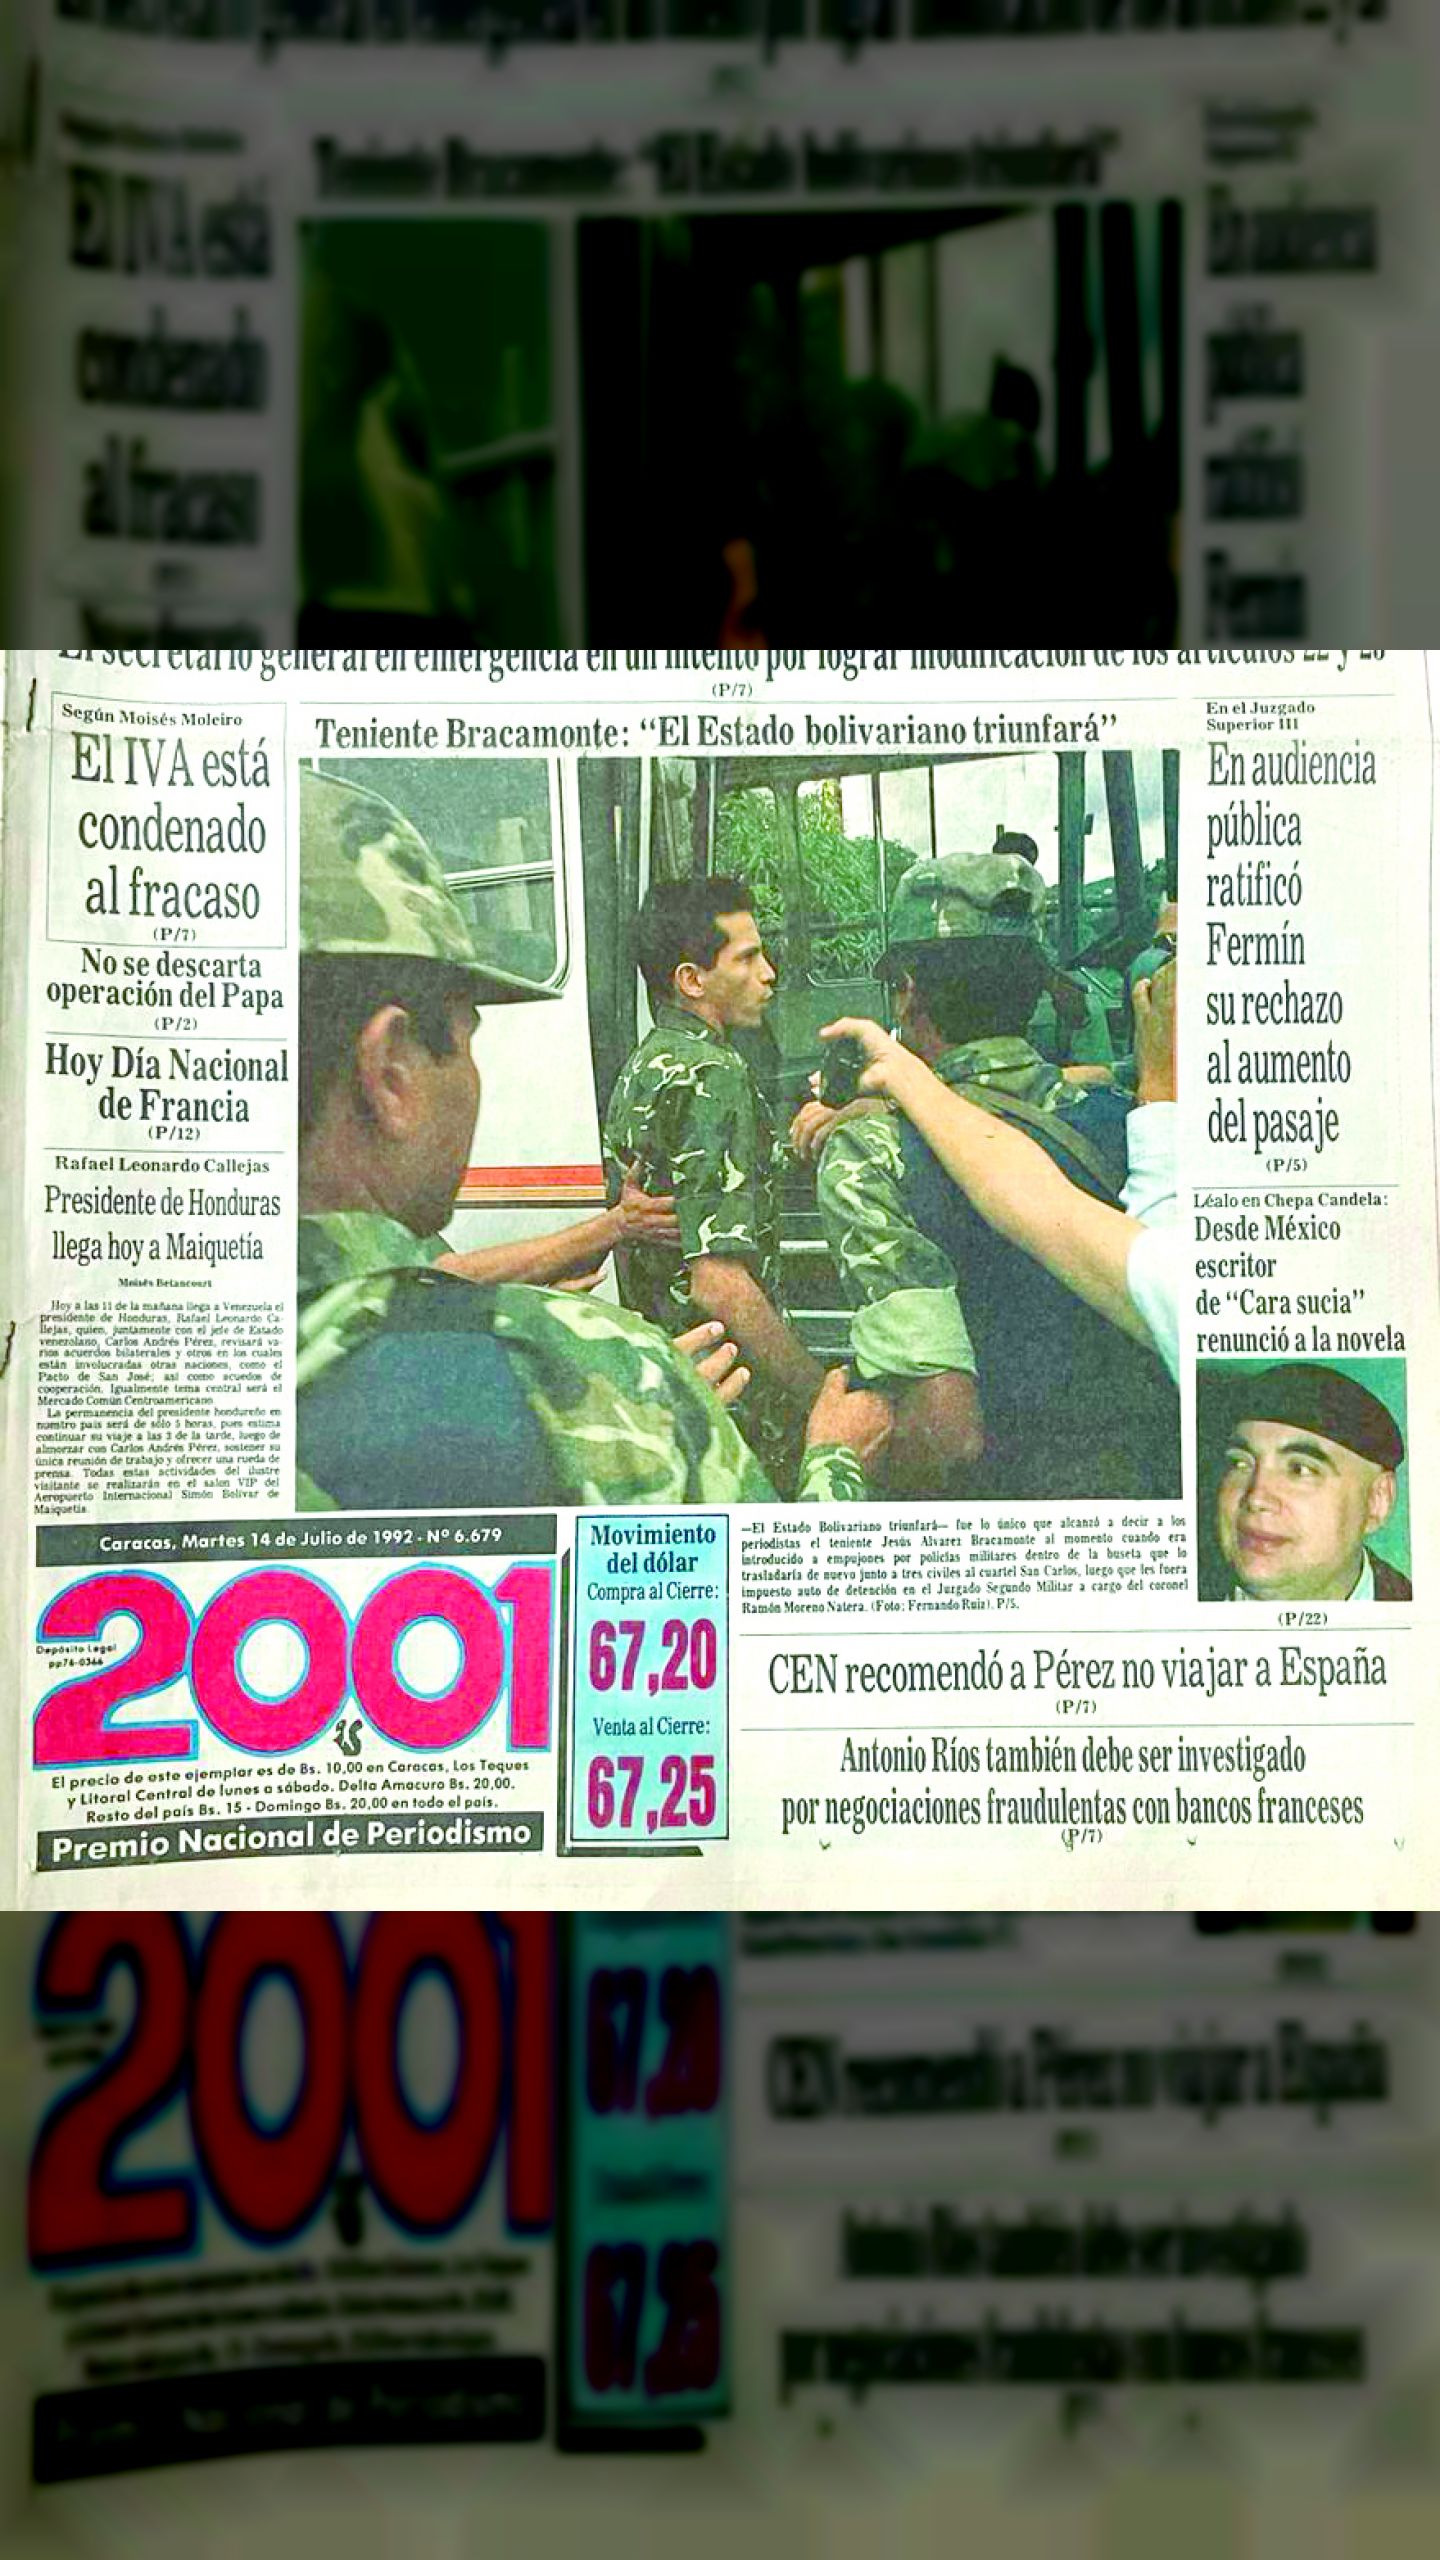 Teniente Álvarez Bracamonte: "El Estado Bolivariano triunfará" (2001, 14 de julio de 1992)